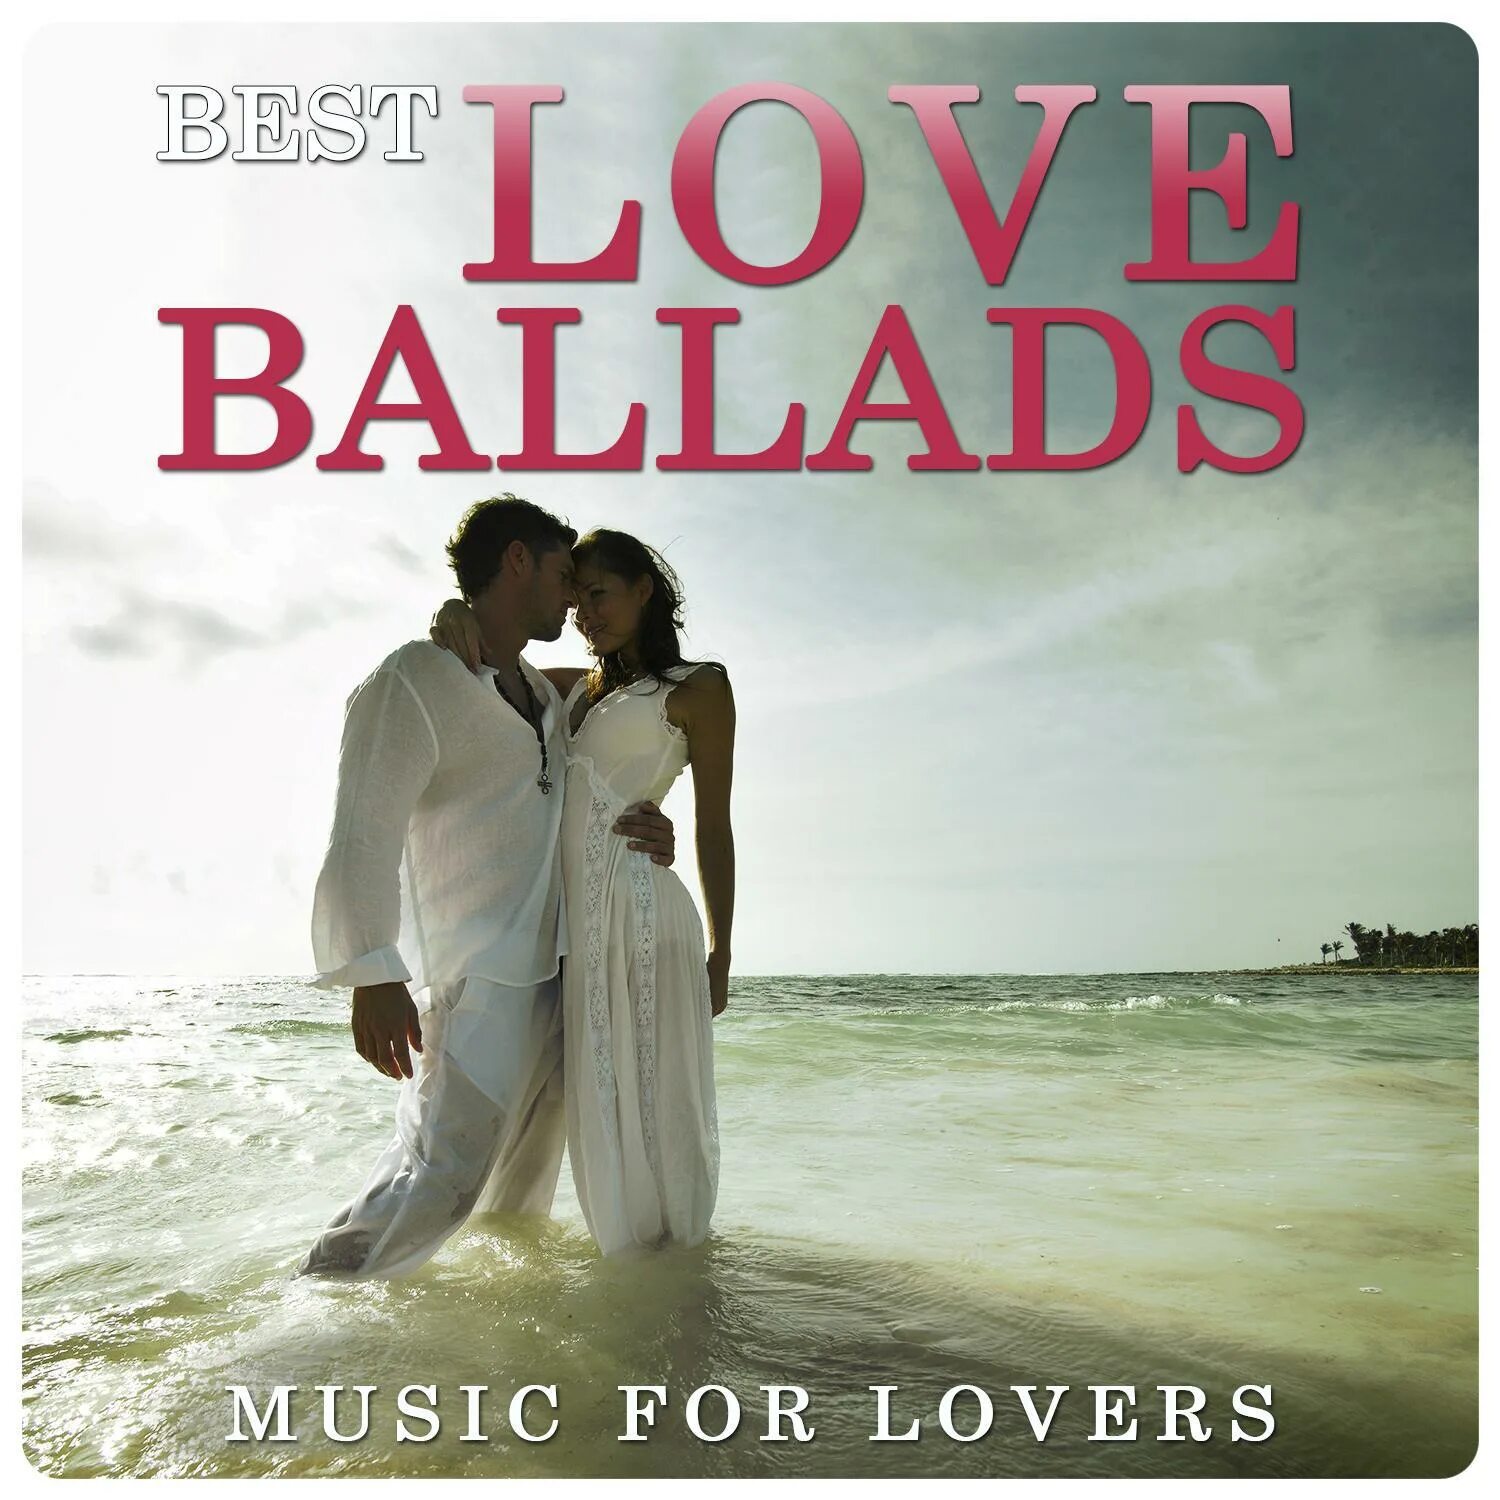 Love can better. Ballads Music. Best Ballads. Love Ballads. Best Love Ballads.